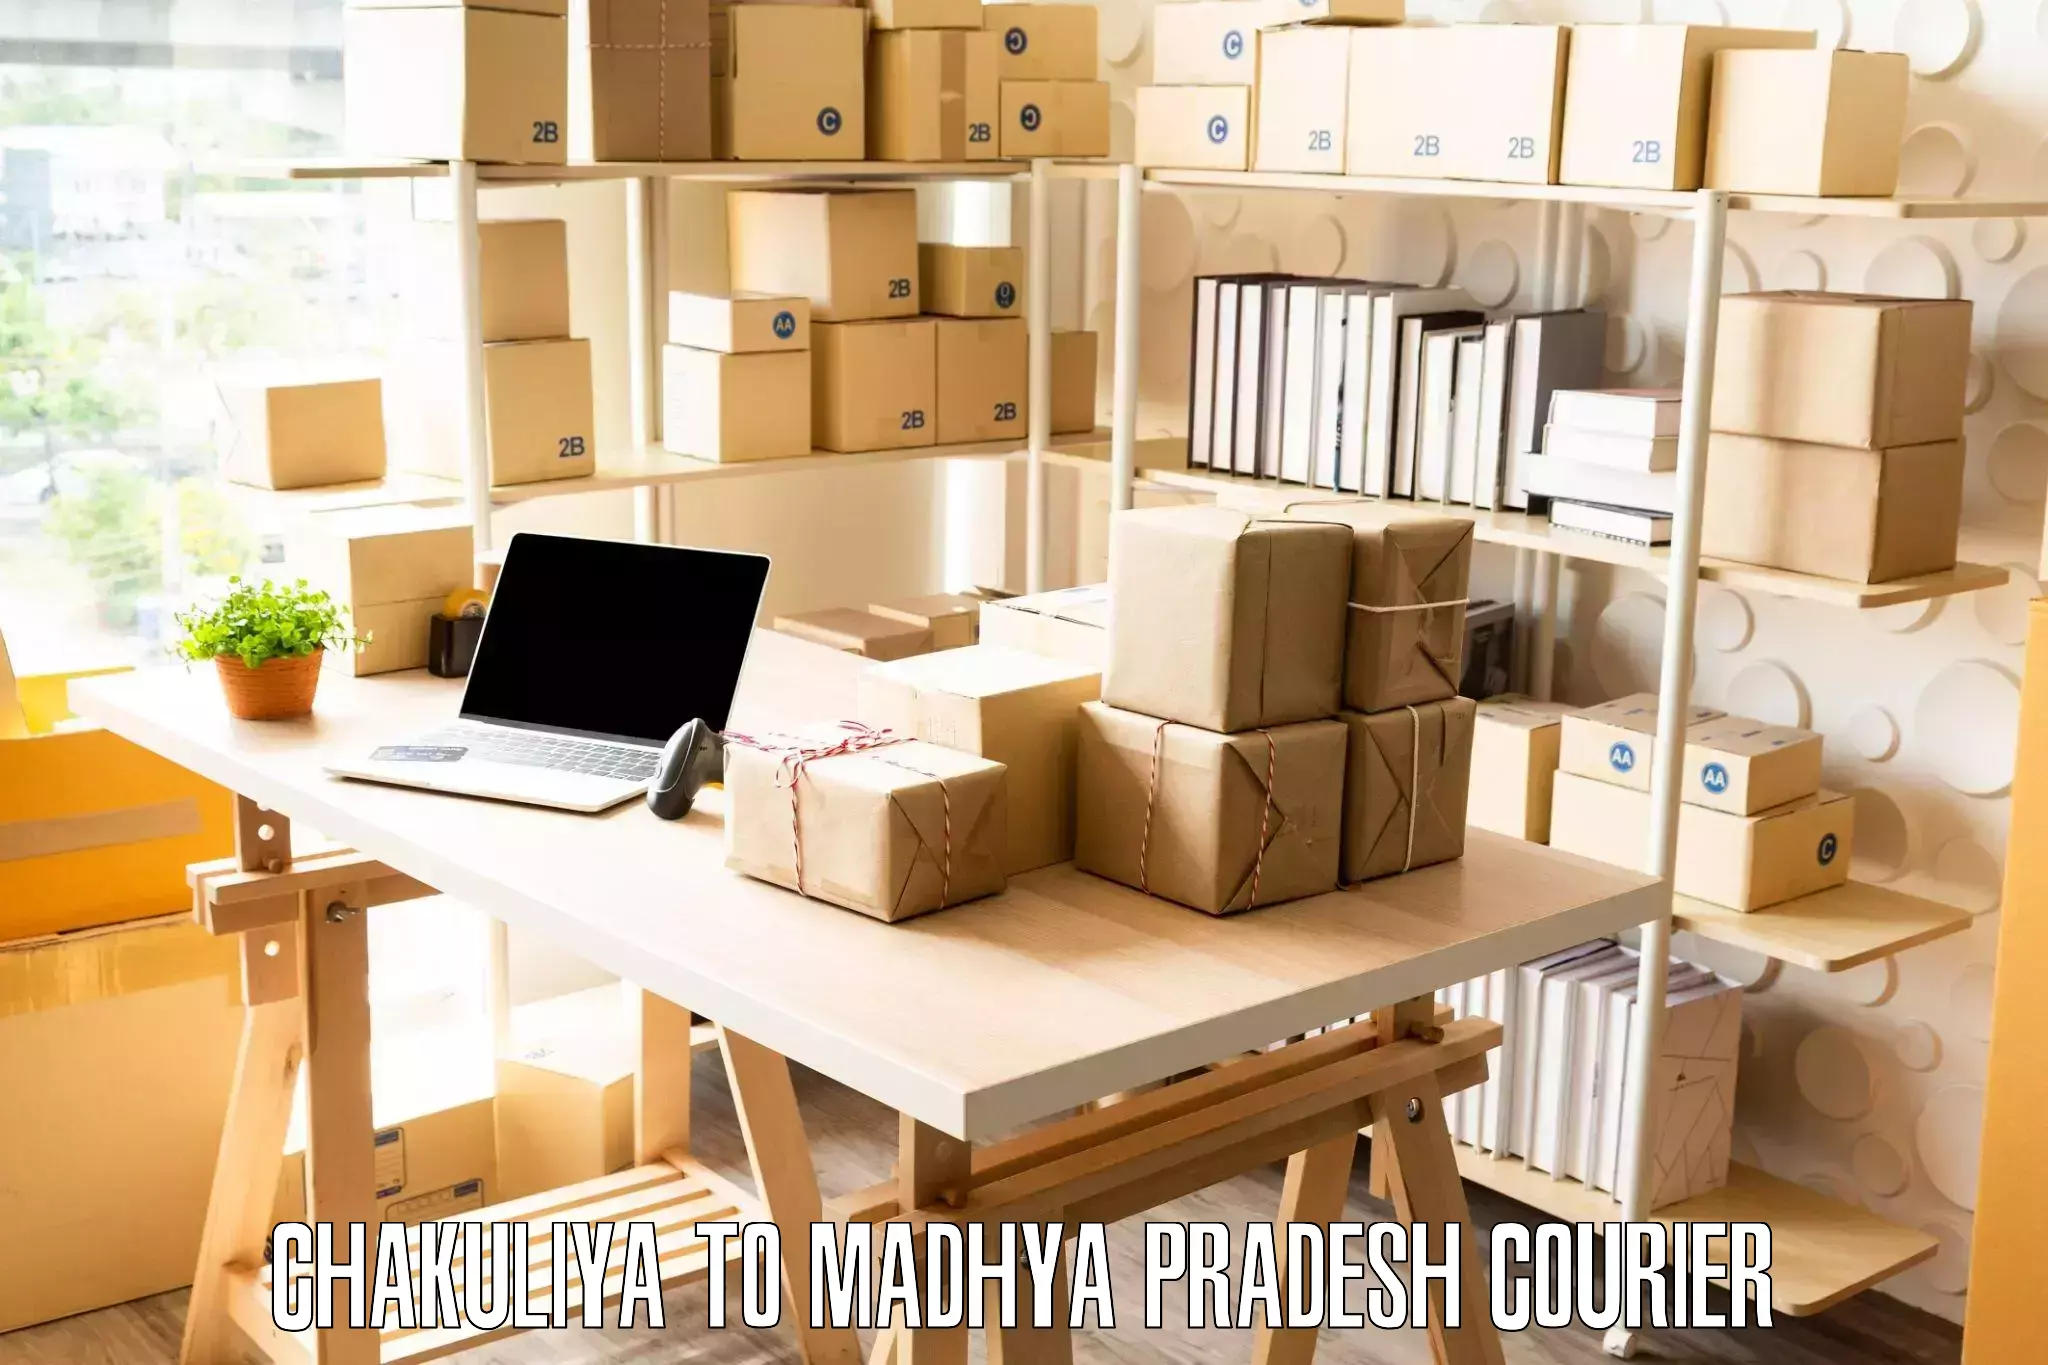 Efficient packing services Chakuliya to Mandideep